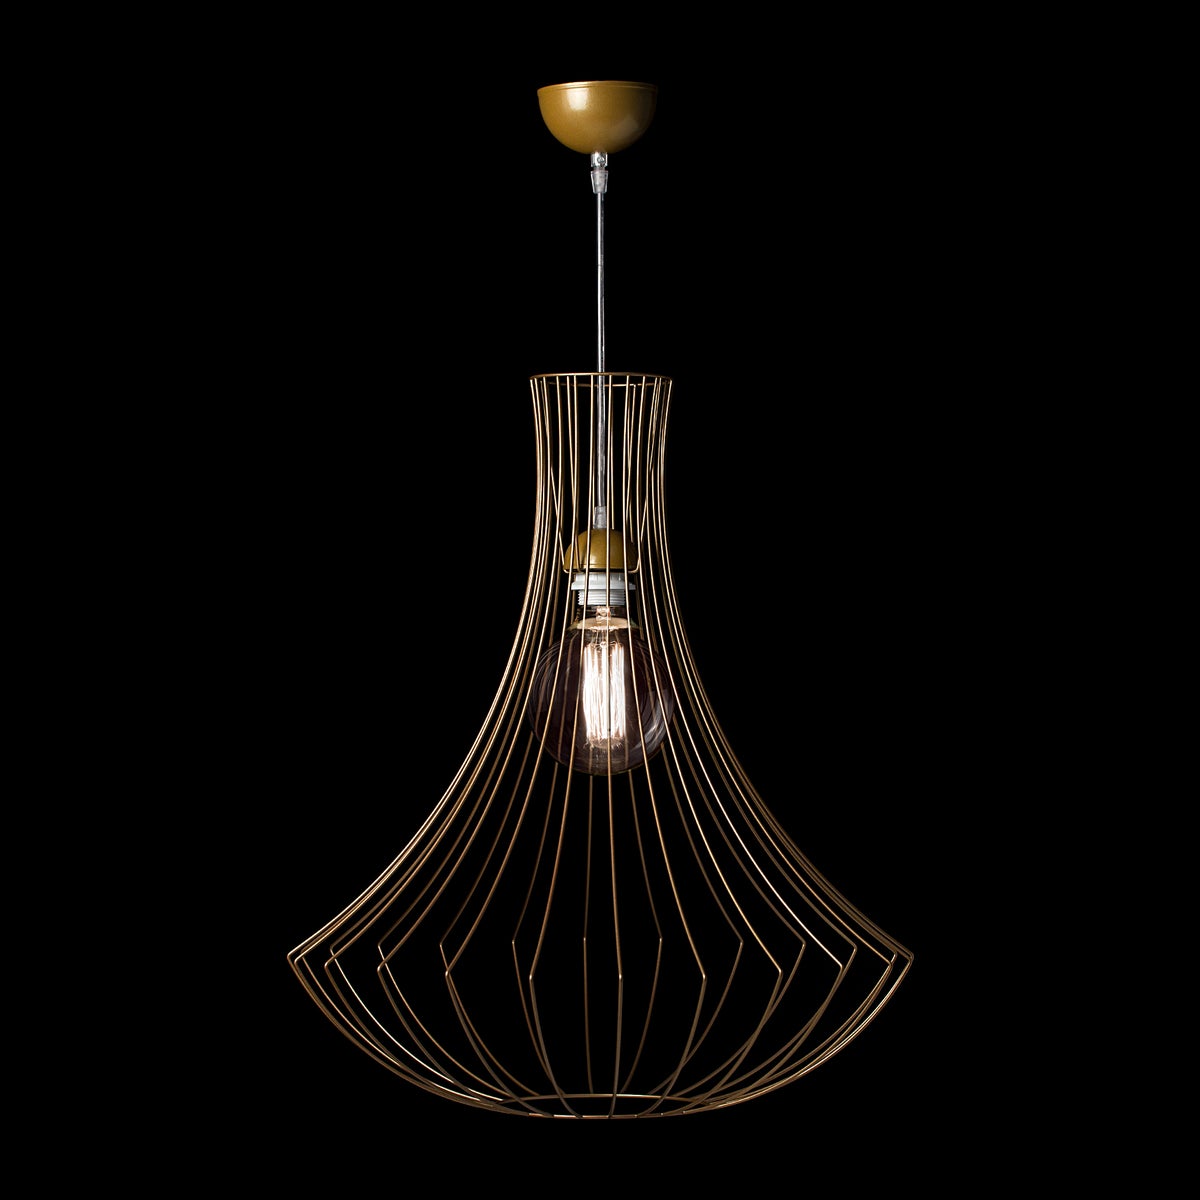 Moderne skandinavische Designlampe Hängelampe in Gold 60 cm | Wohnzimmer Esszimmer Leuchte